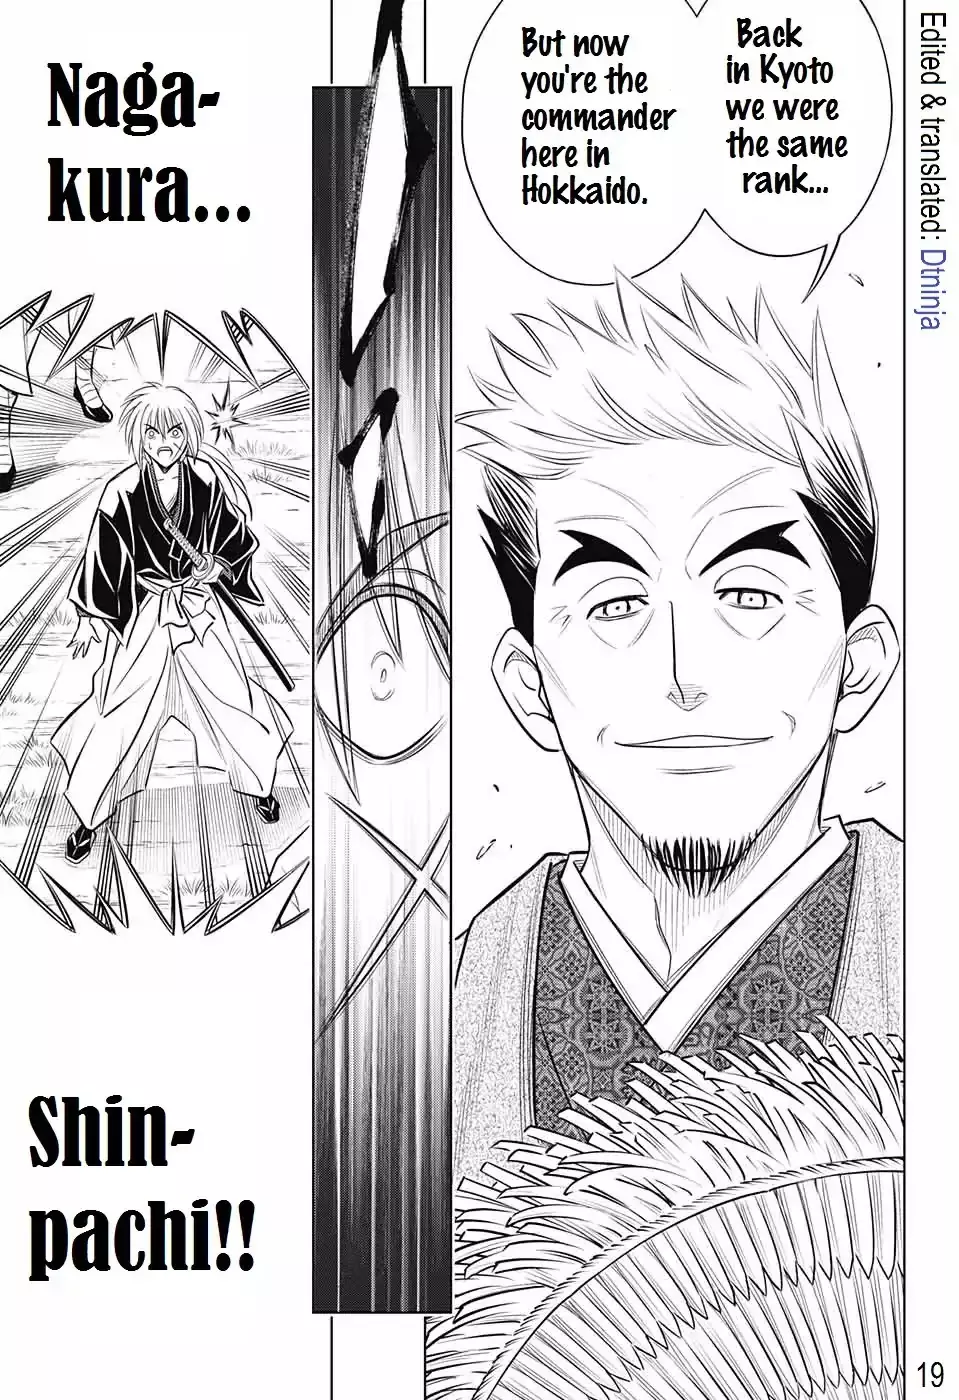 Rurouni Kenshin: Hokkaido Arc - 14 page 19